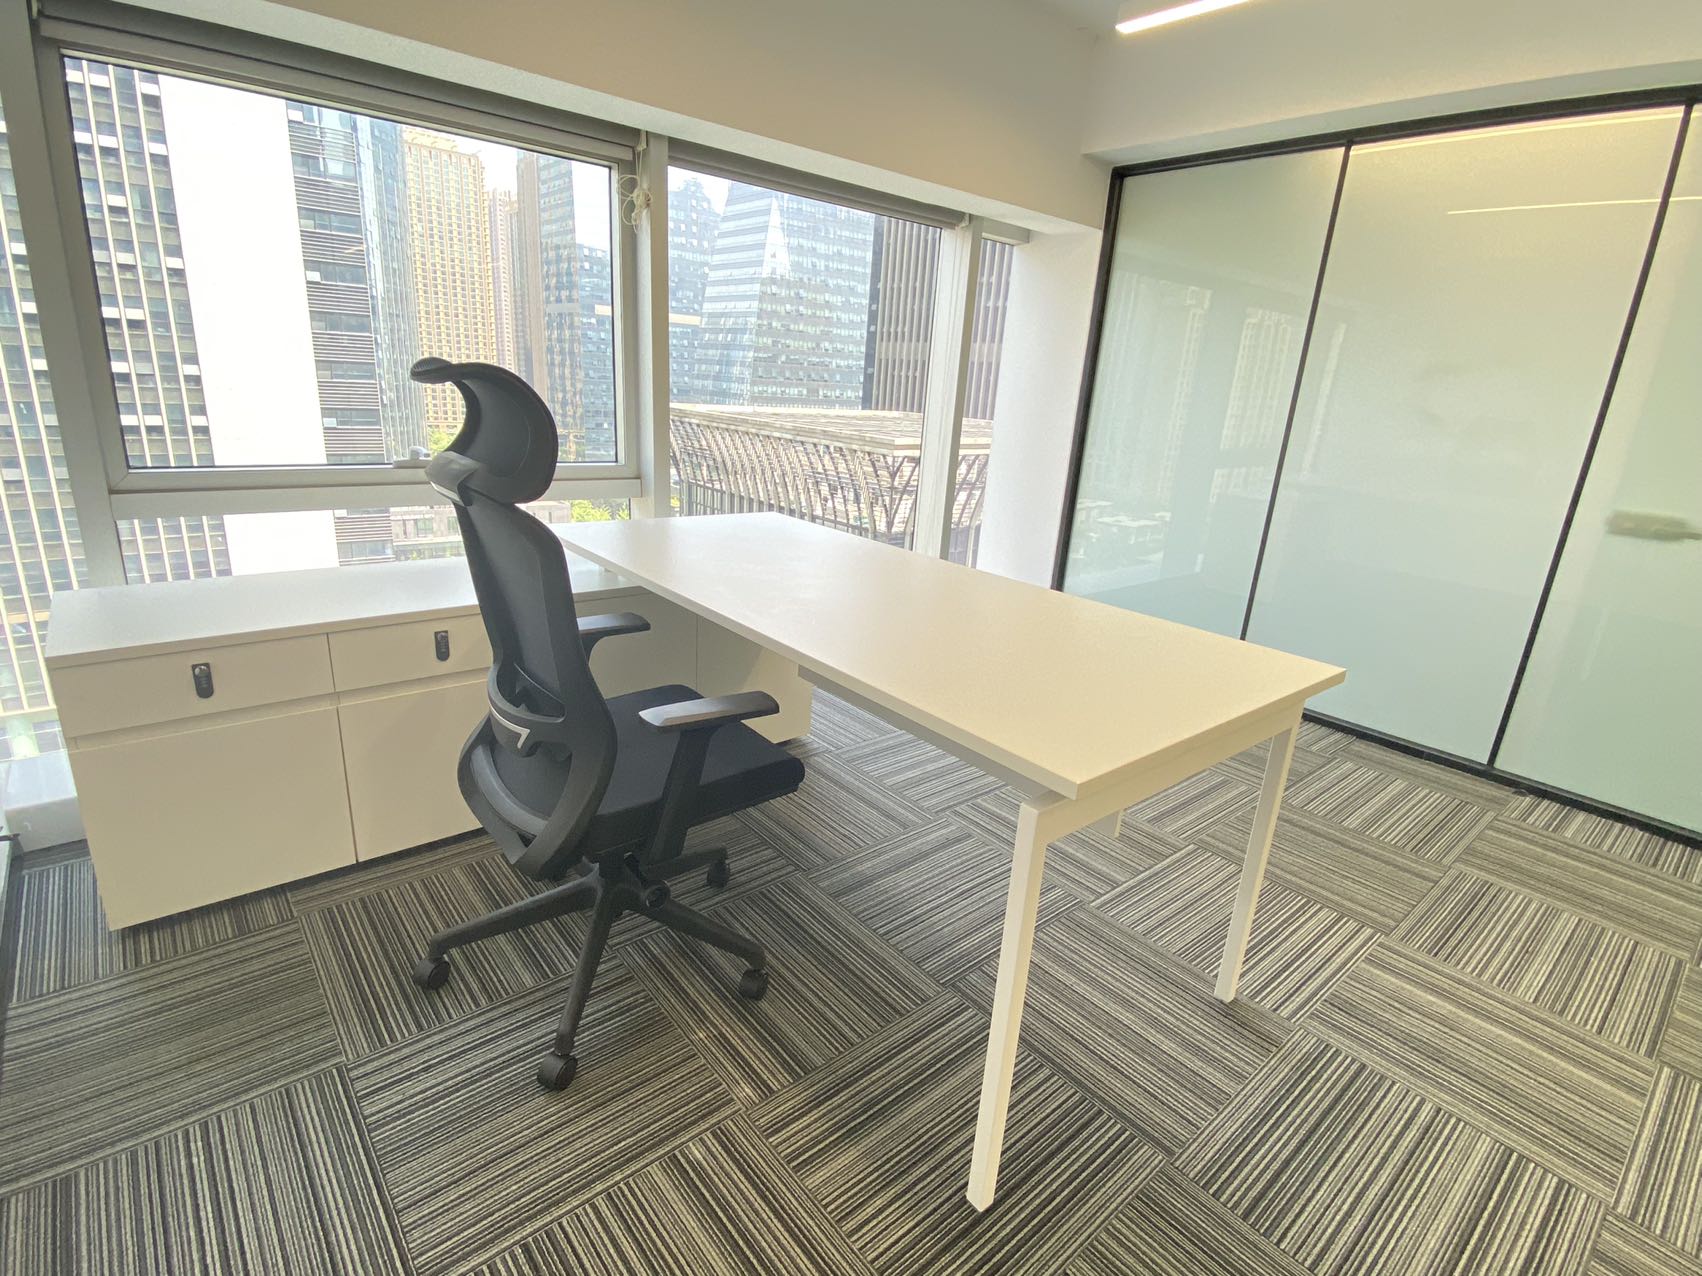 含物业 高新区天府三街福年广场精装跃层办公室 280平 使用面积 性价比高